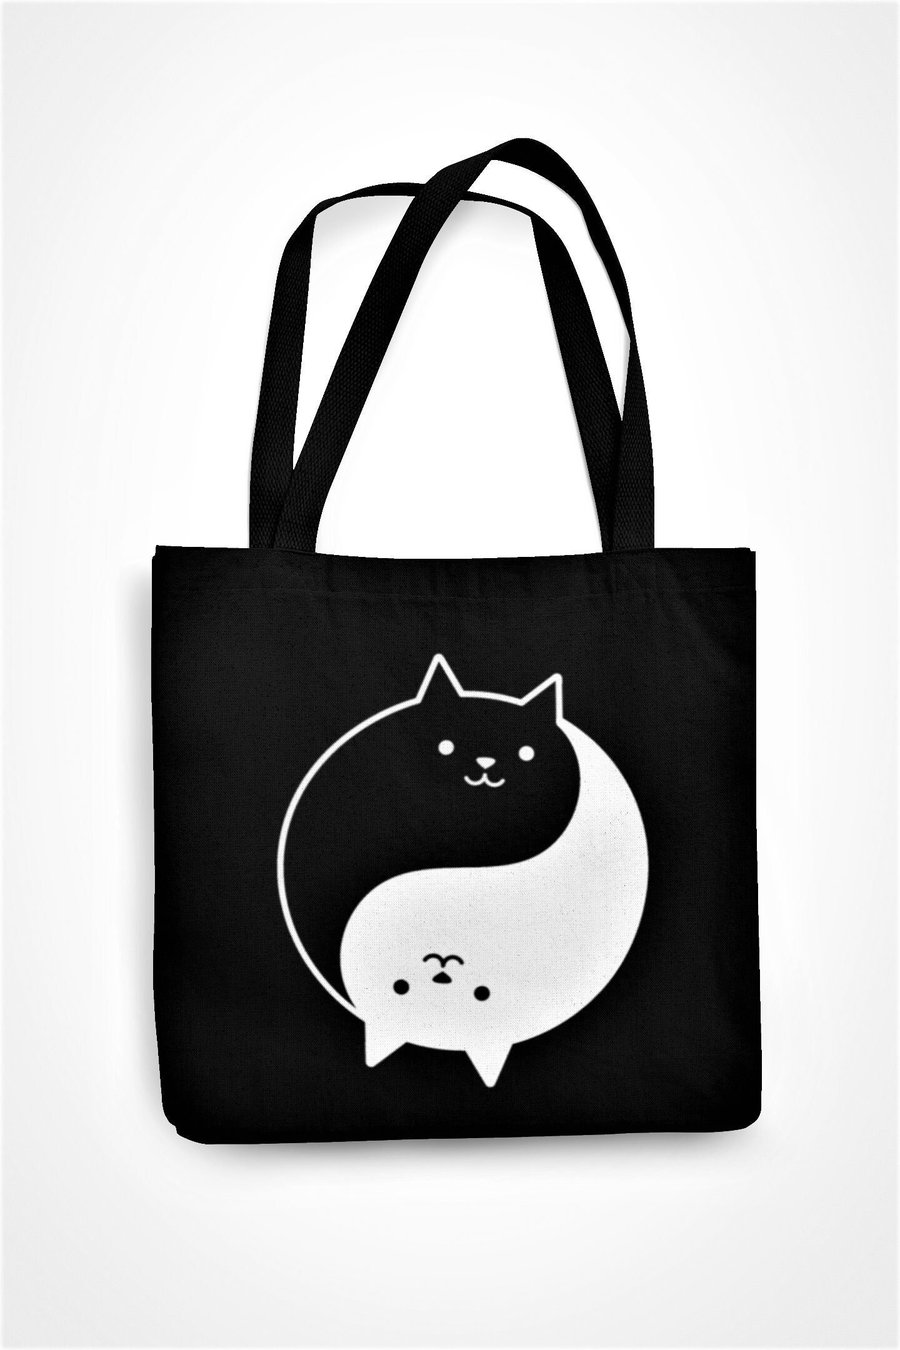 Ying Yang Kittens Tote Bag Cute Kittens Spiritual Zen Peace Eco Friendly bag